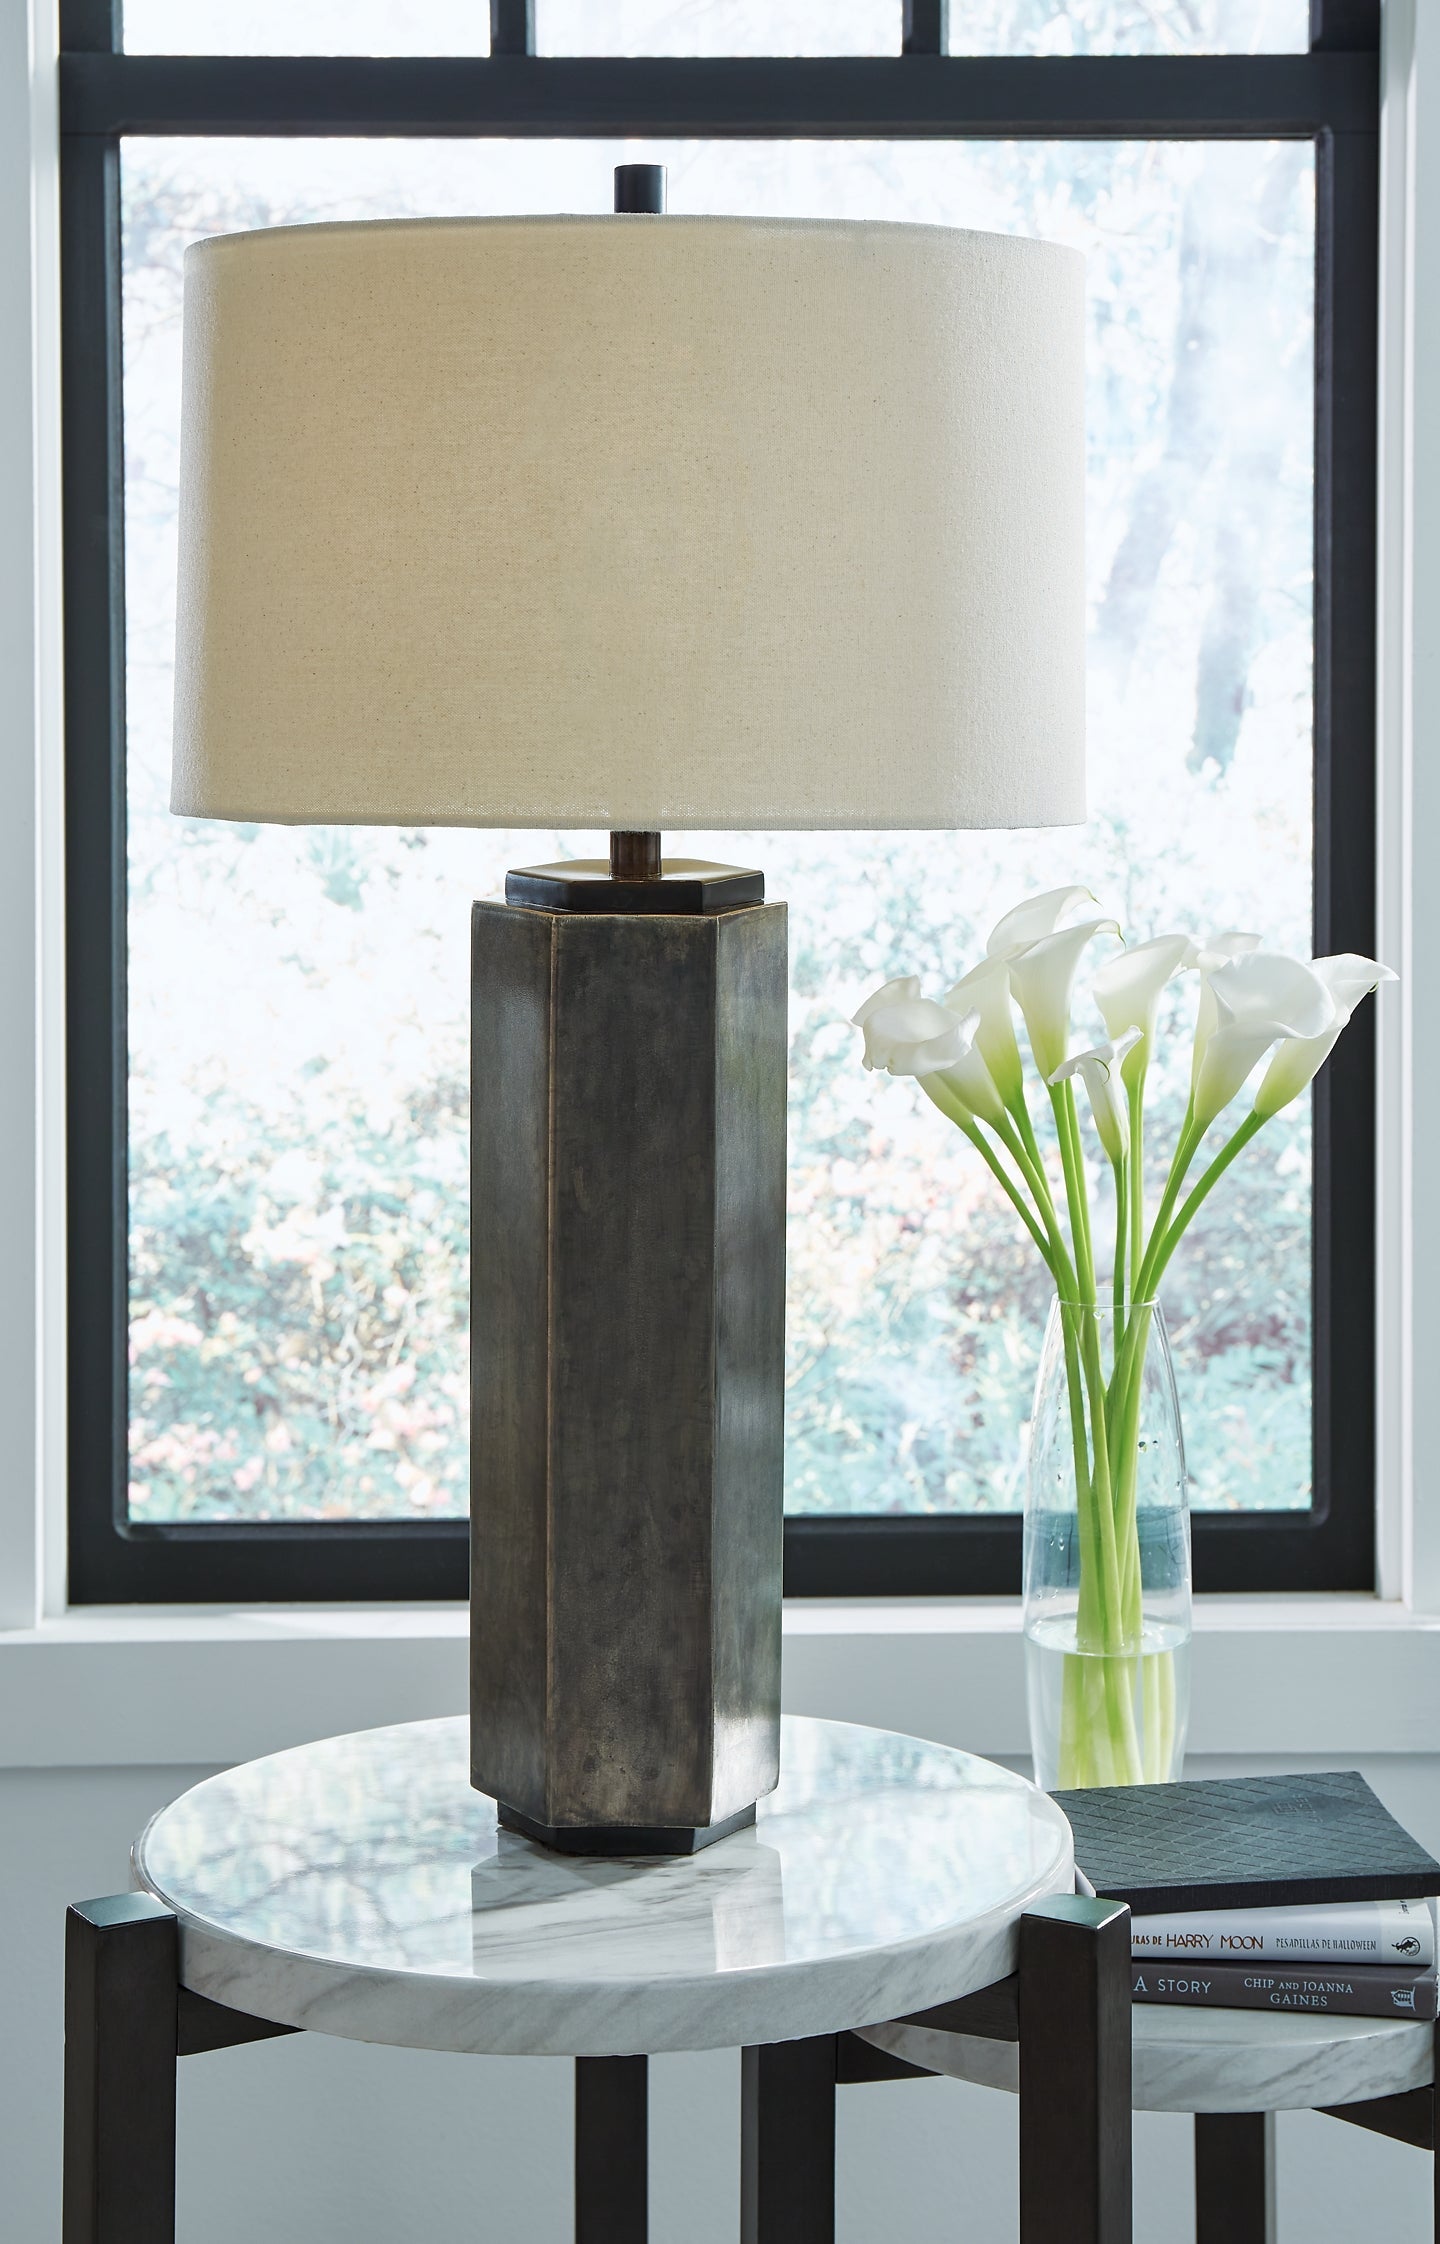 Dirkton Metal Table Lamp (1/CN)